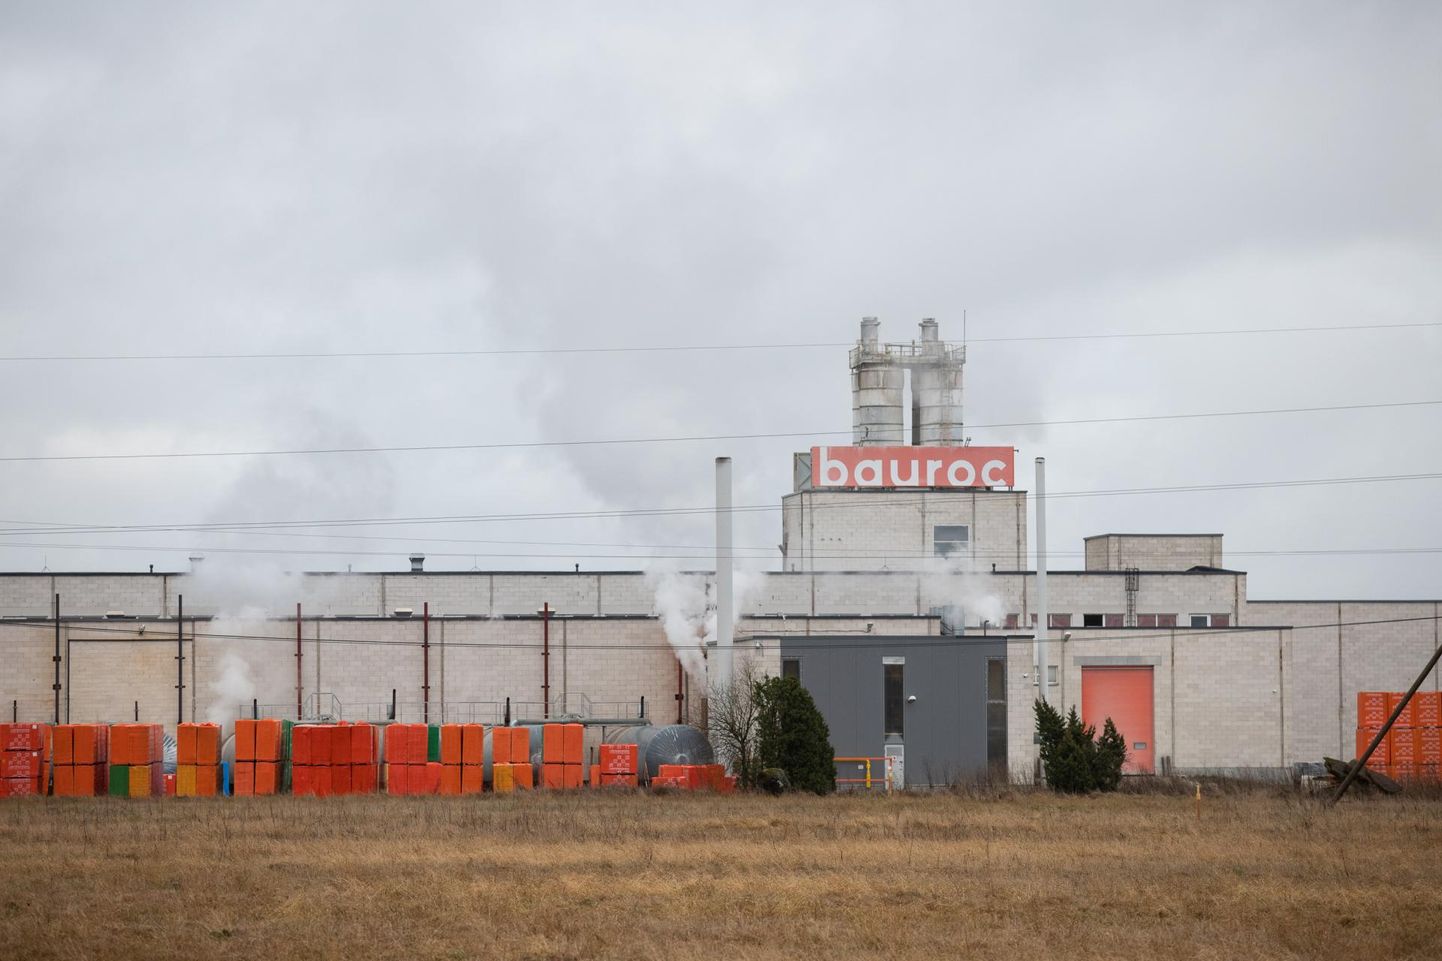 Производитель строительных материалов Bauroc планирует сократить двадцать человек.